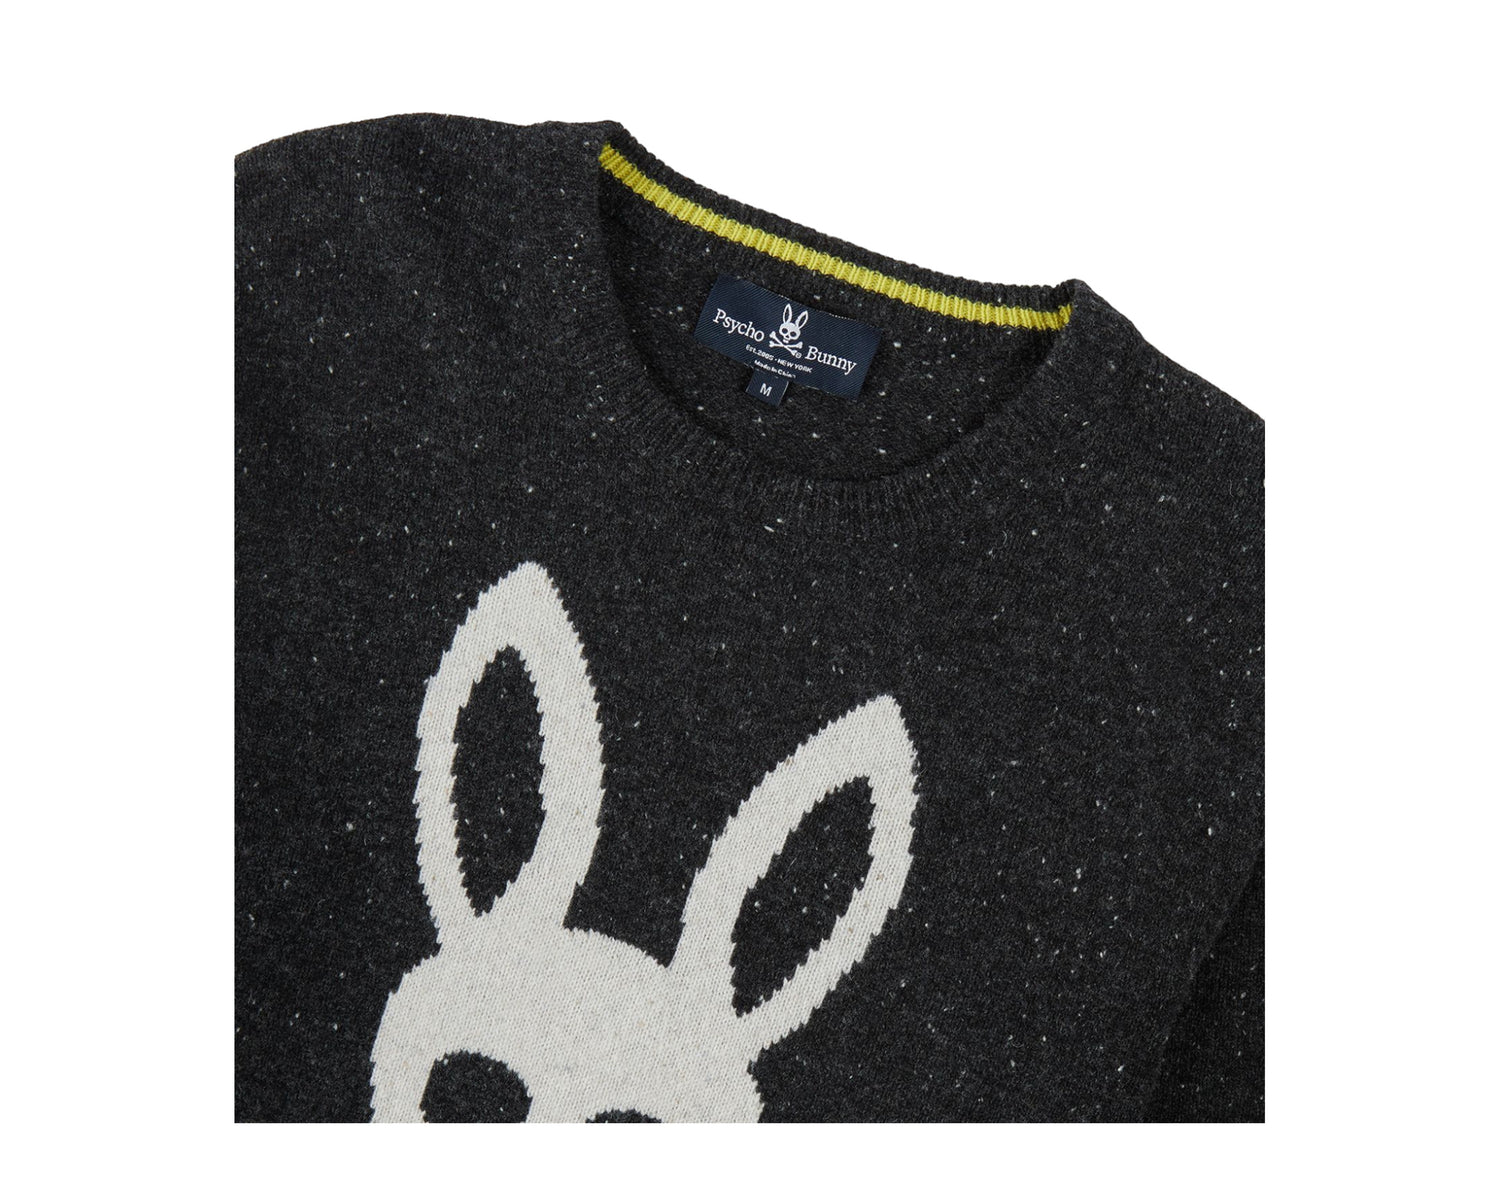 Psycho Bunny Vandam Men's Wool Sweater